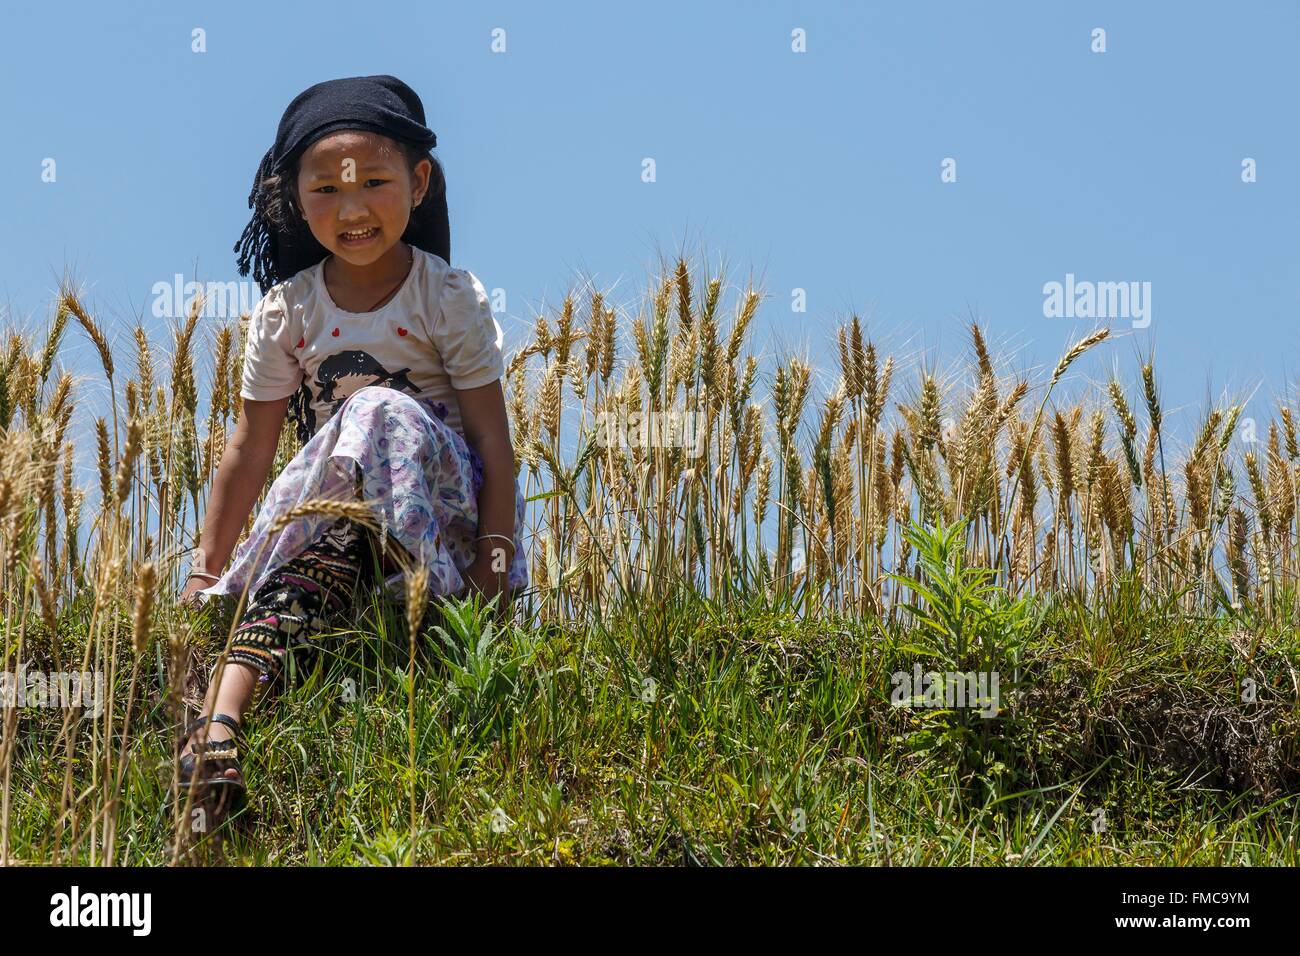 Le Népal, zone Bagmati, Chunikel, jeune fille devant un champ de blé Banque D'Images